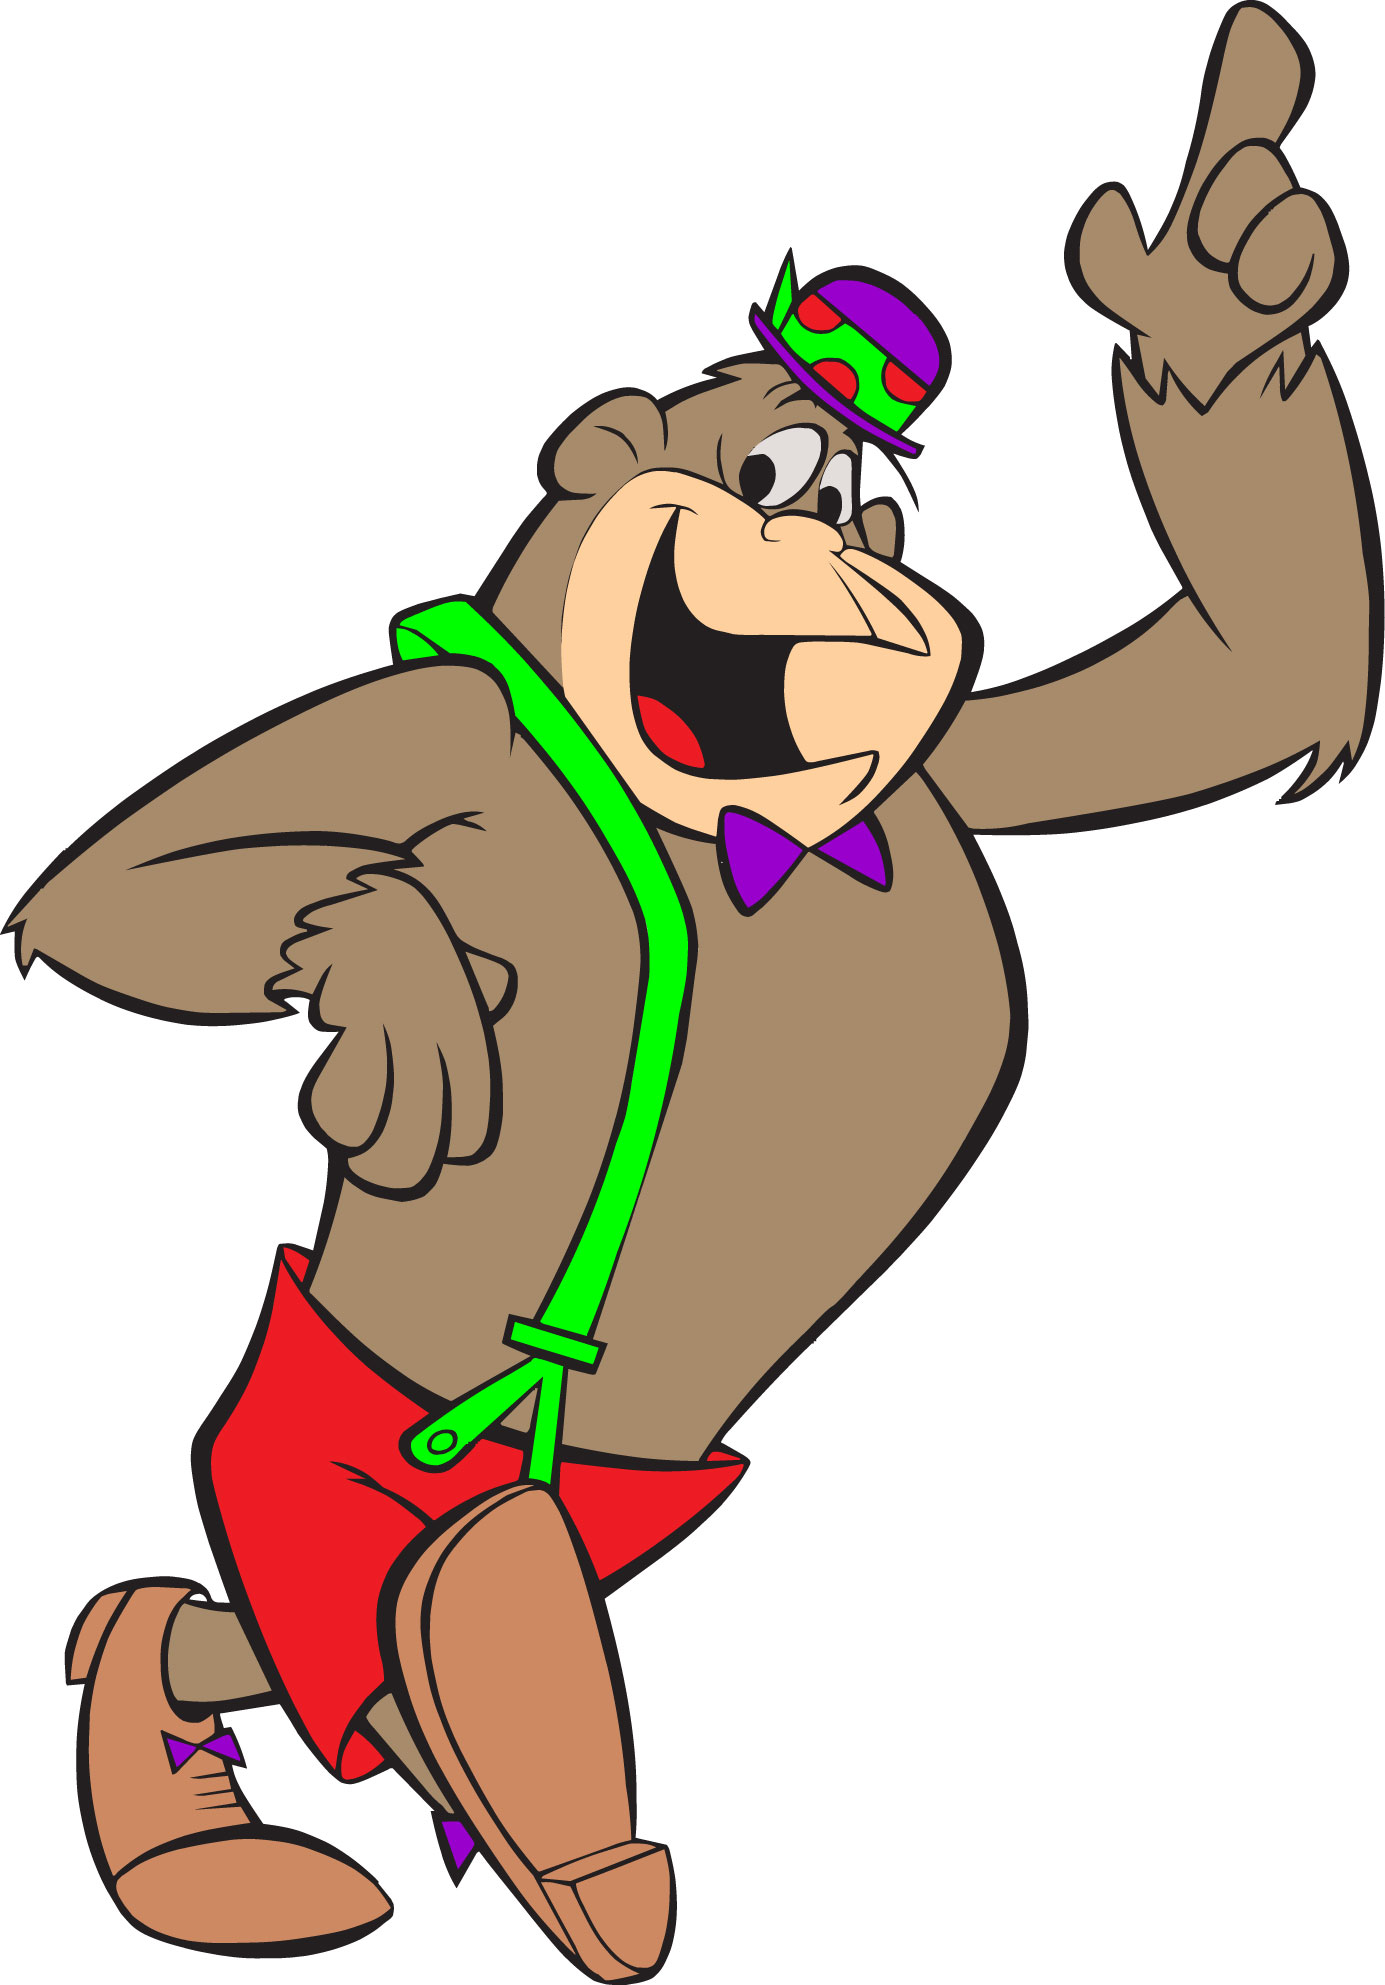 Magilla gorilla Decal, popular cartoon characters decals, tv show ...